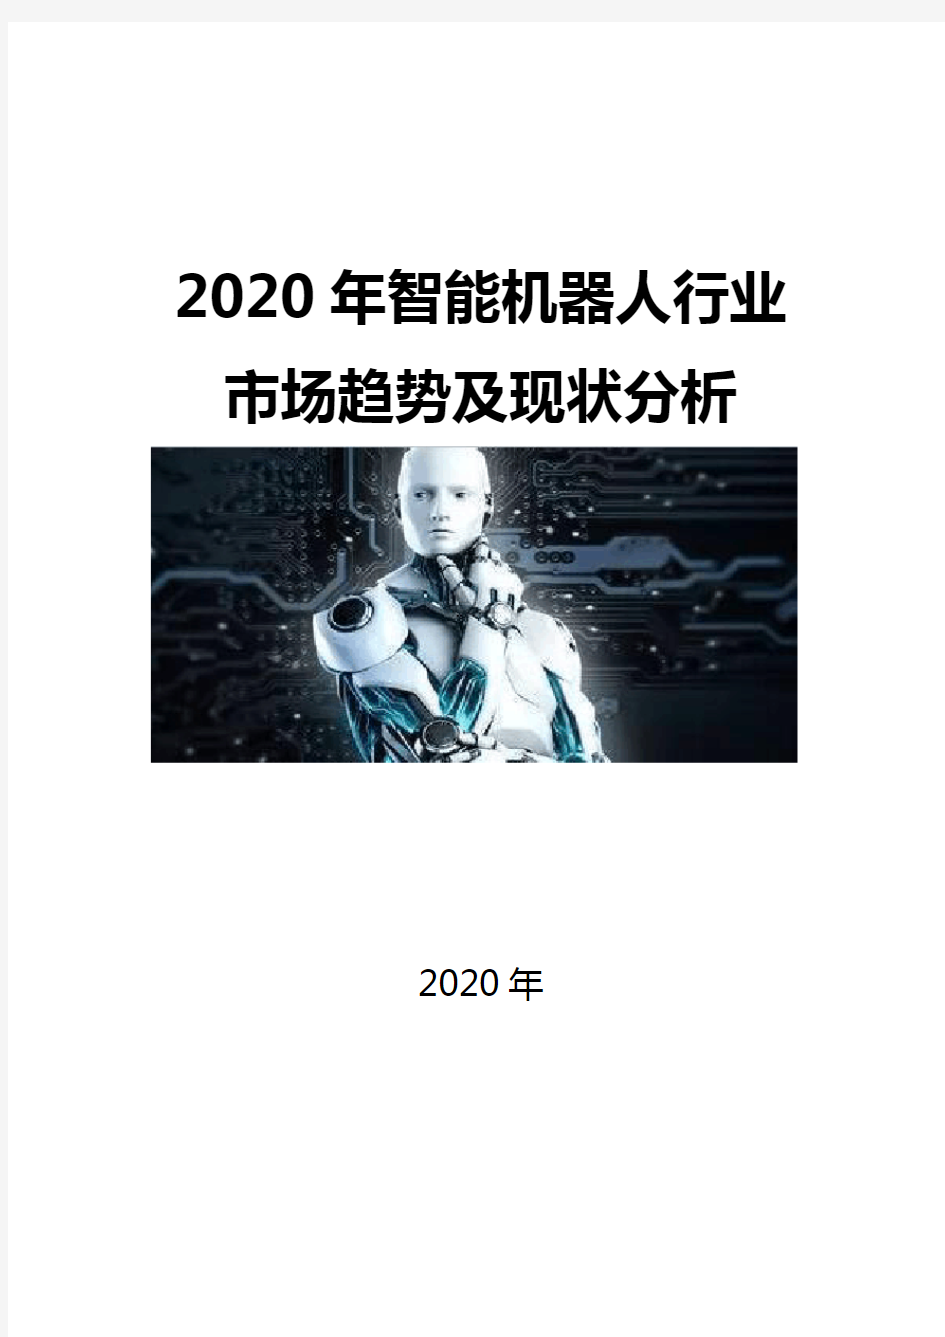 2020智能机器人行业市场趋势及现状分析